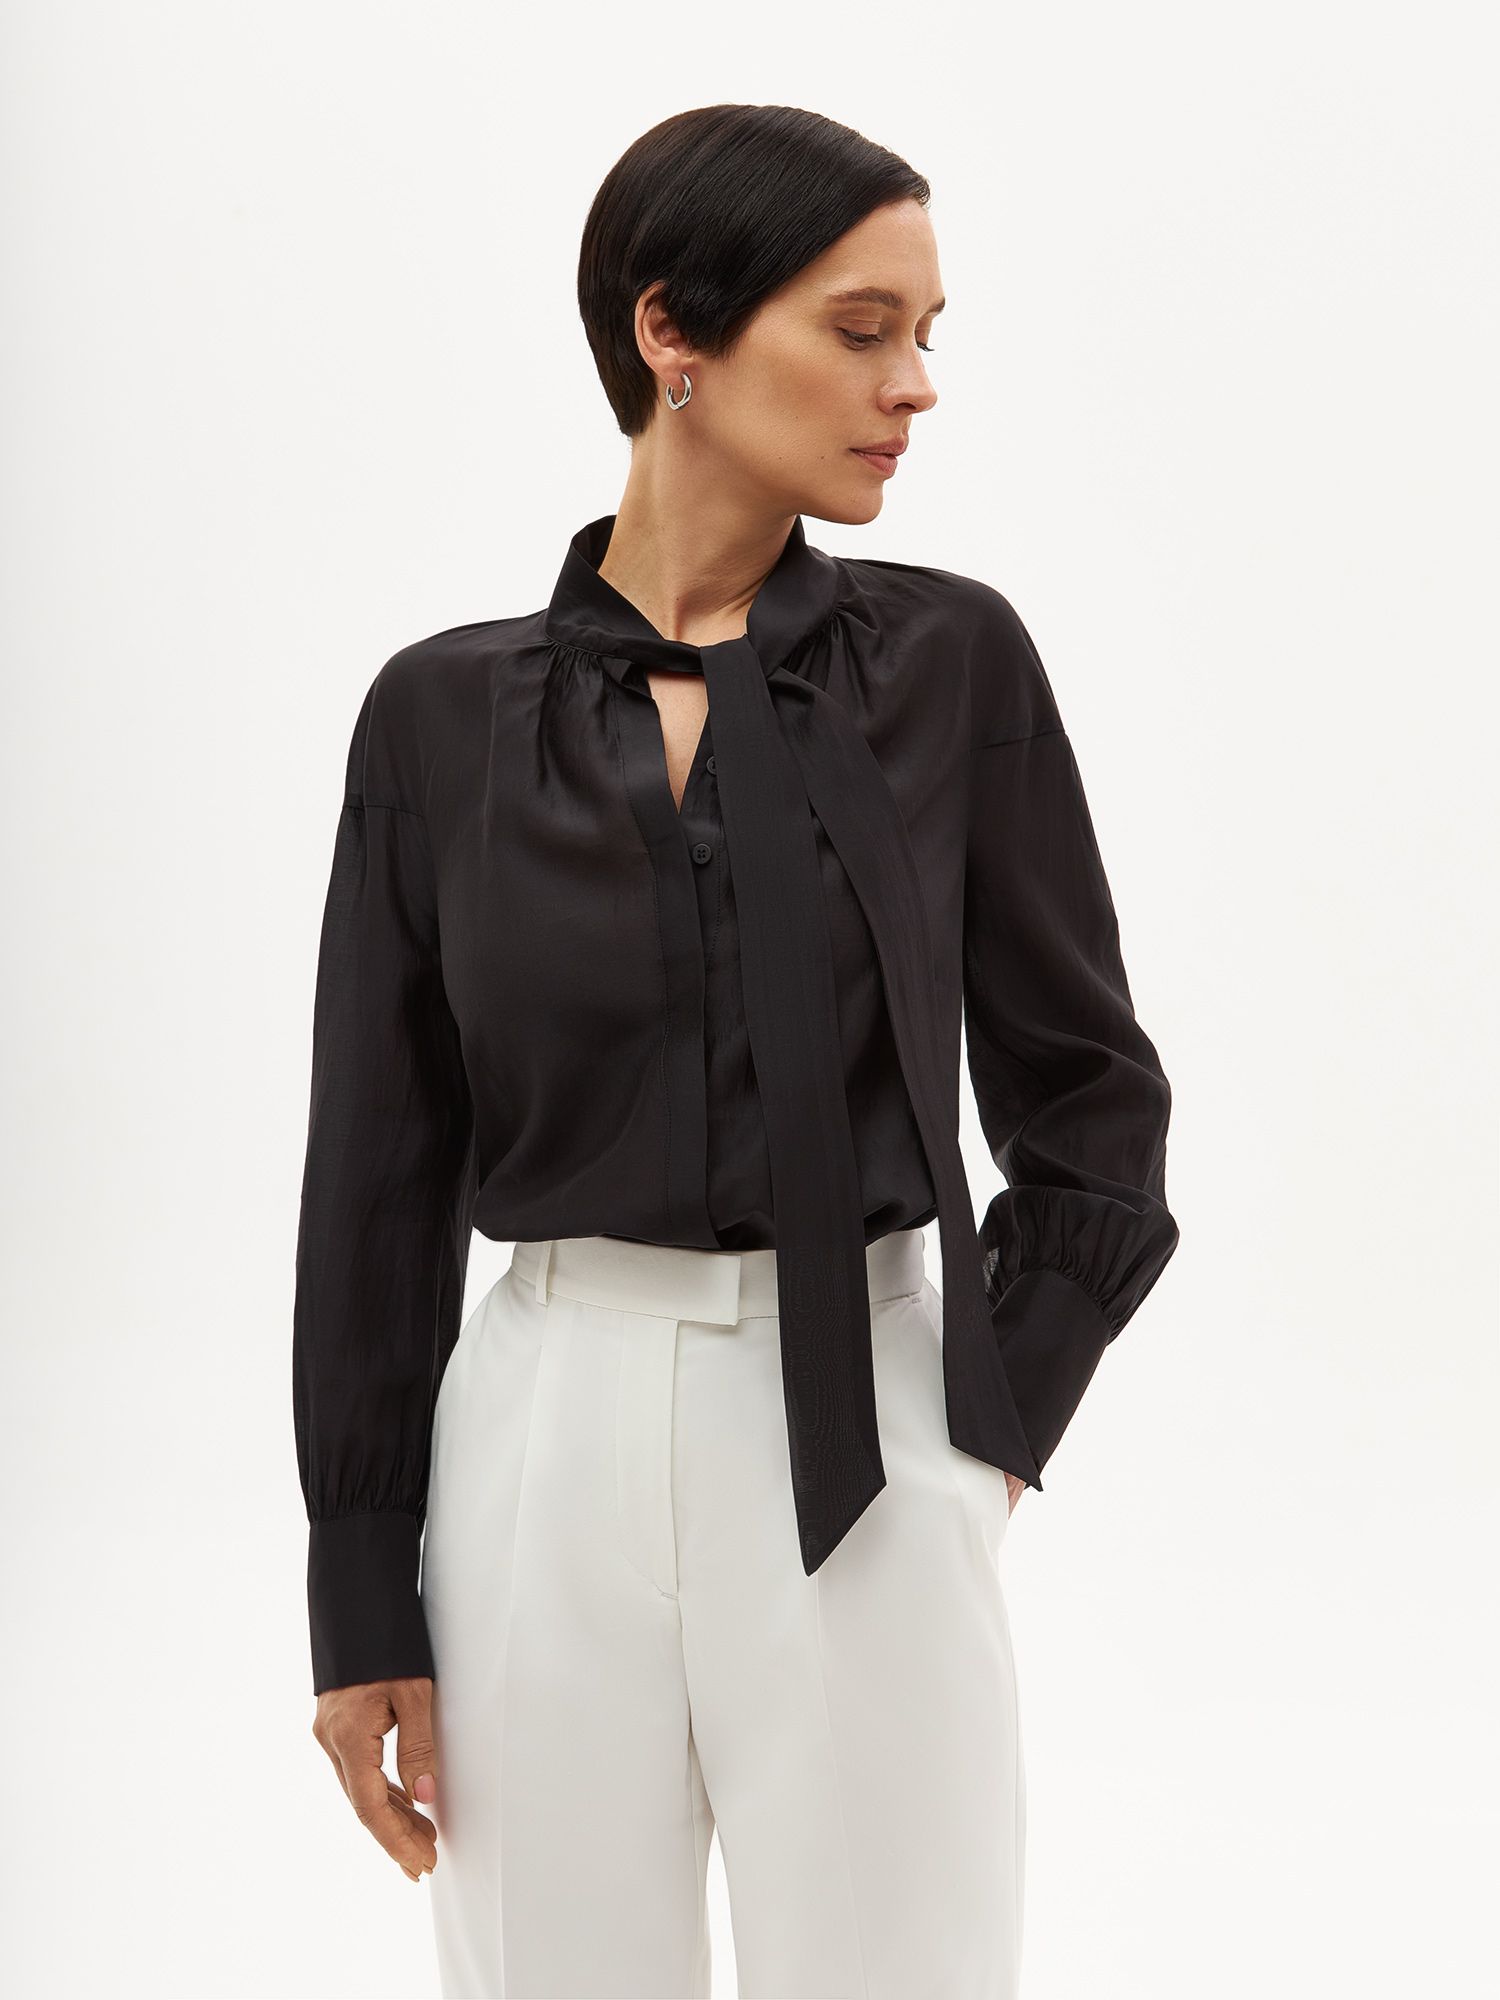 Блуза с бантом из экологичного модала. Изображение 1